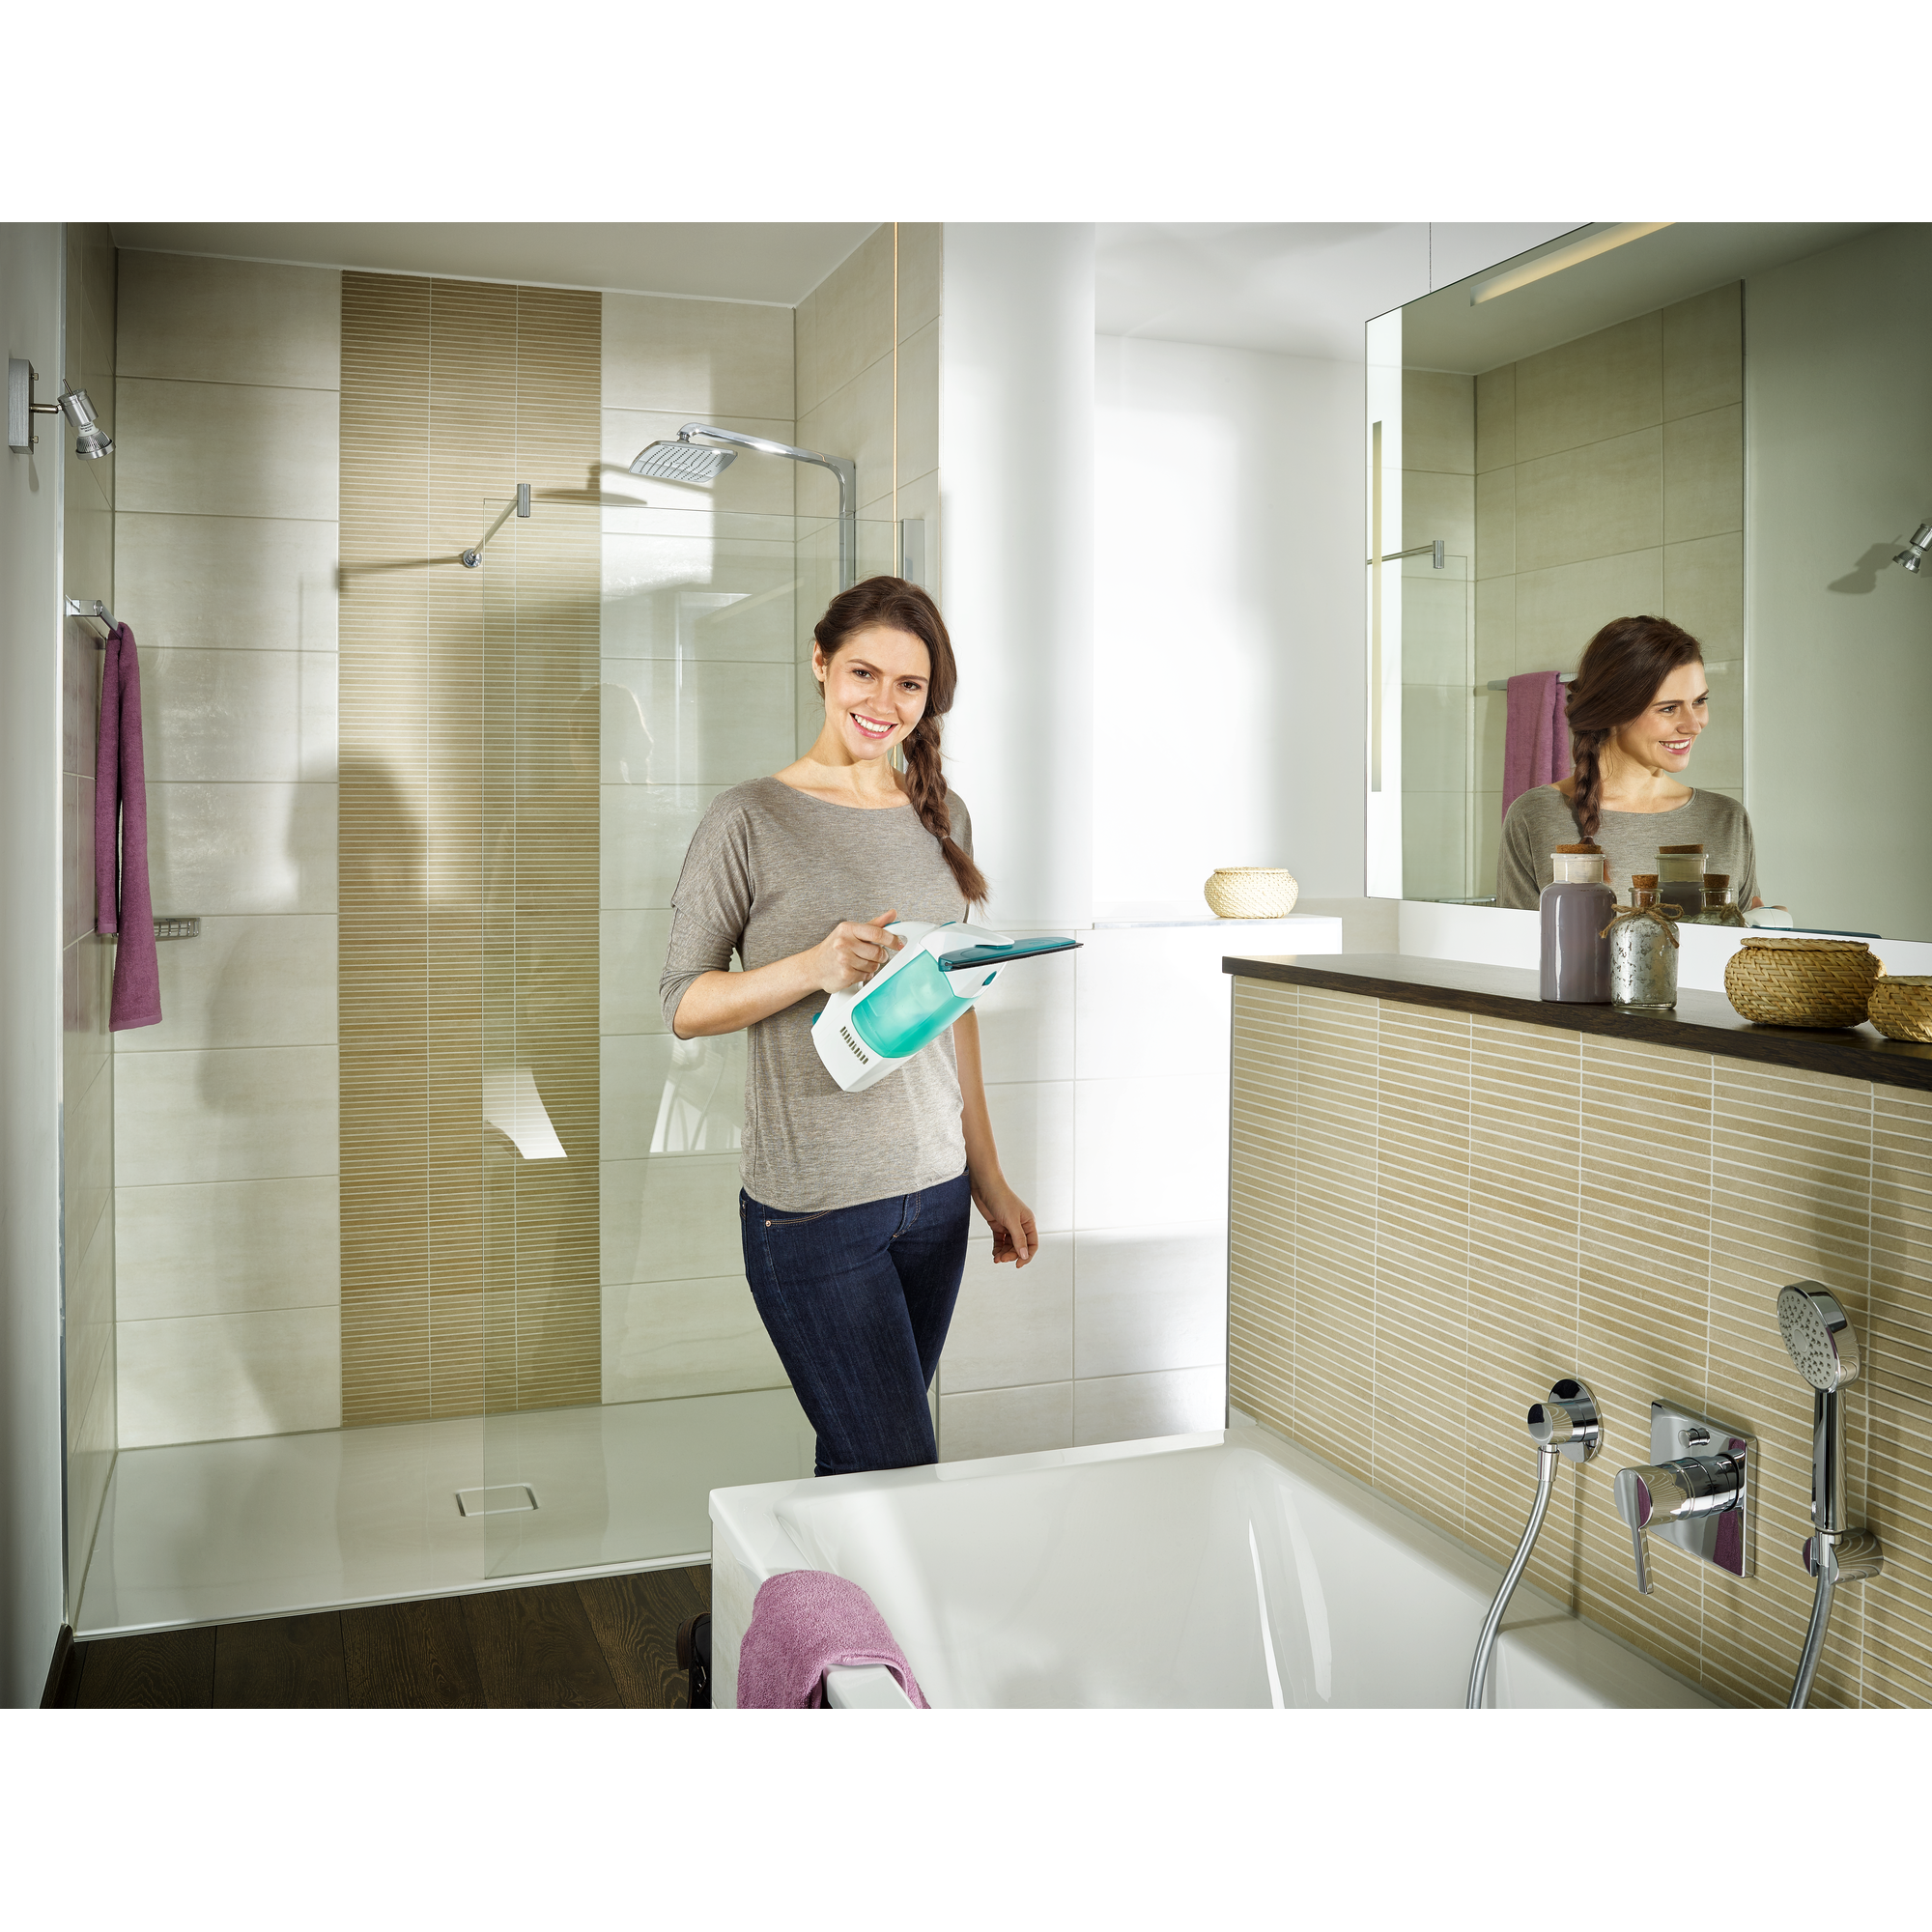 Fenstersauger-Set 'Dry & Clean' mit Einwascher + product picture